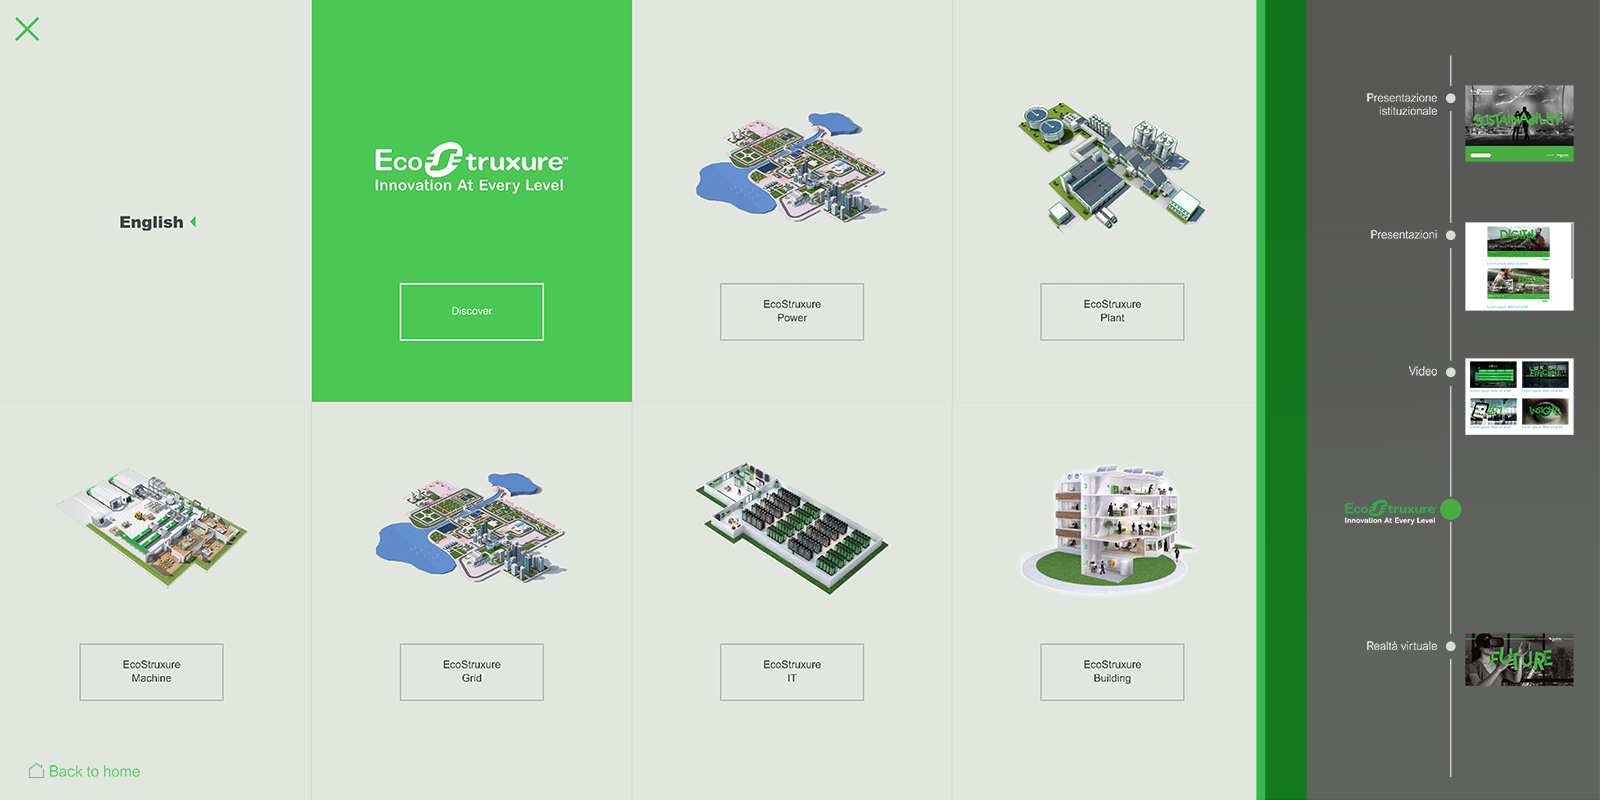 Touchwindow - Nuovi spazi di scoperta, formazione, innovazione